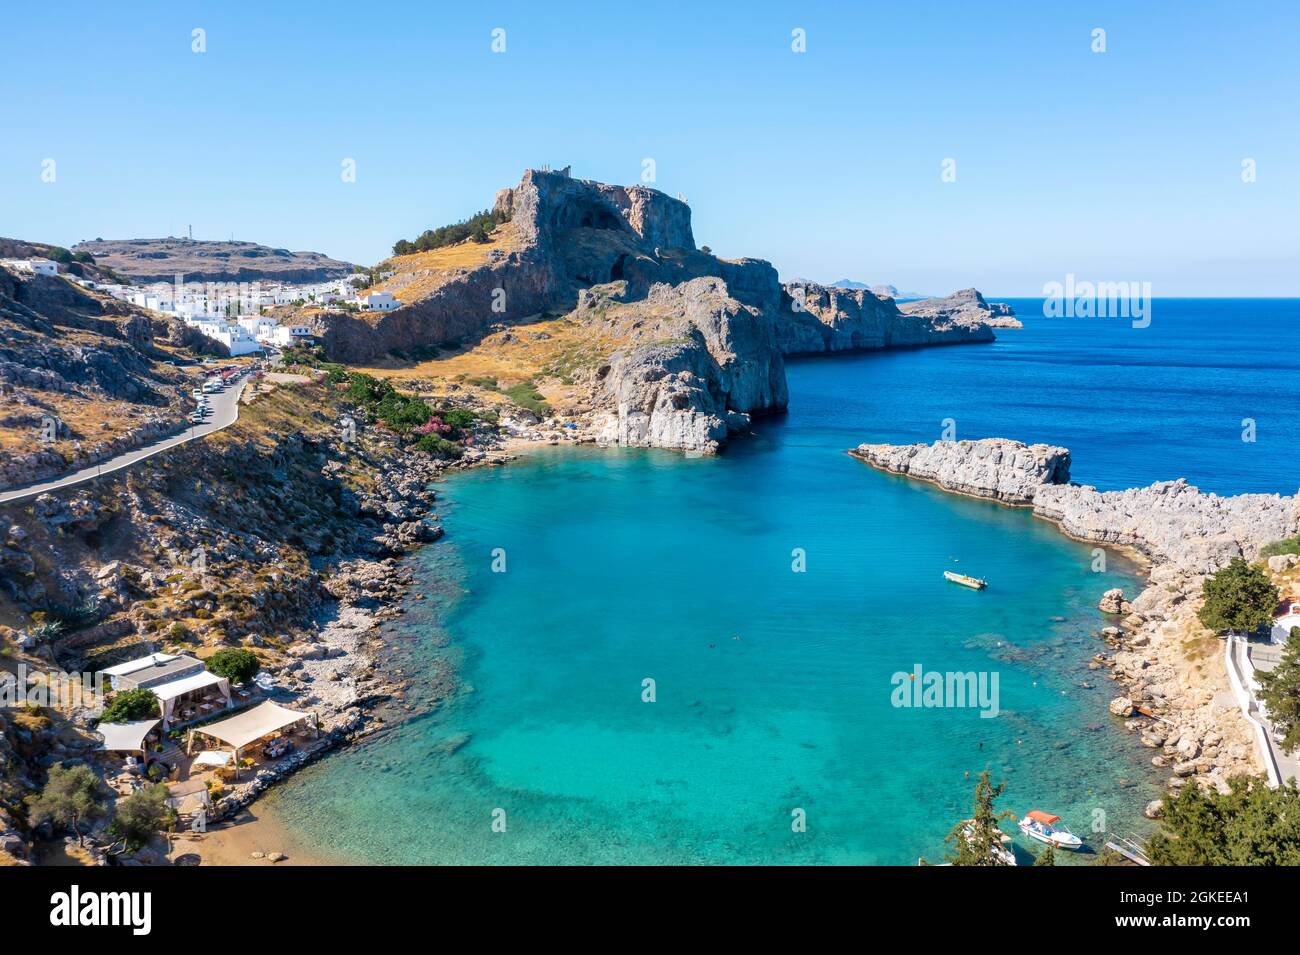 Mare turchese e spiaggia sabbiosa, Acropoli di Lindos, antica cittadella su una scogliera ripida, Lindos, Rodi, Dodecaneso, Grecia Foto Stock